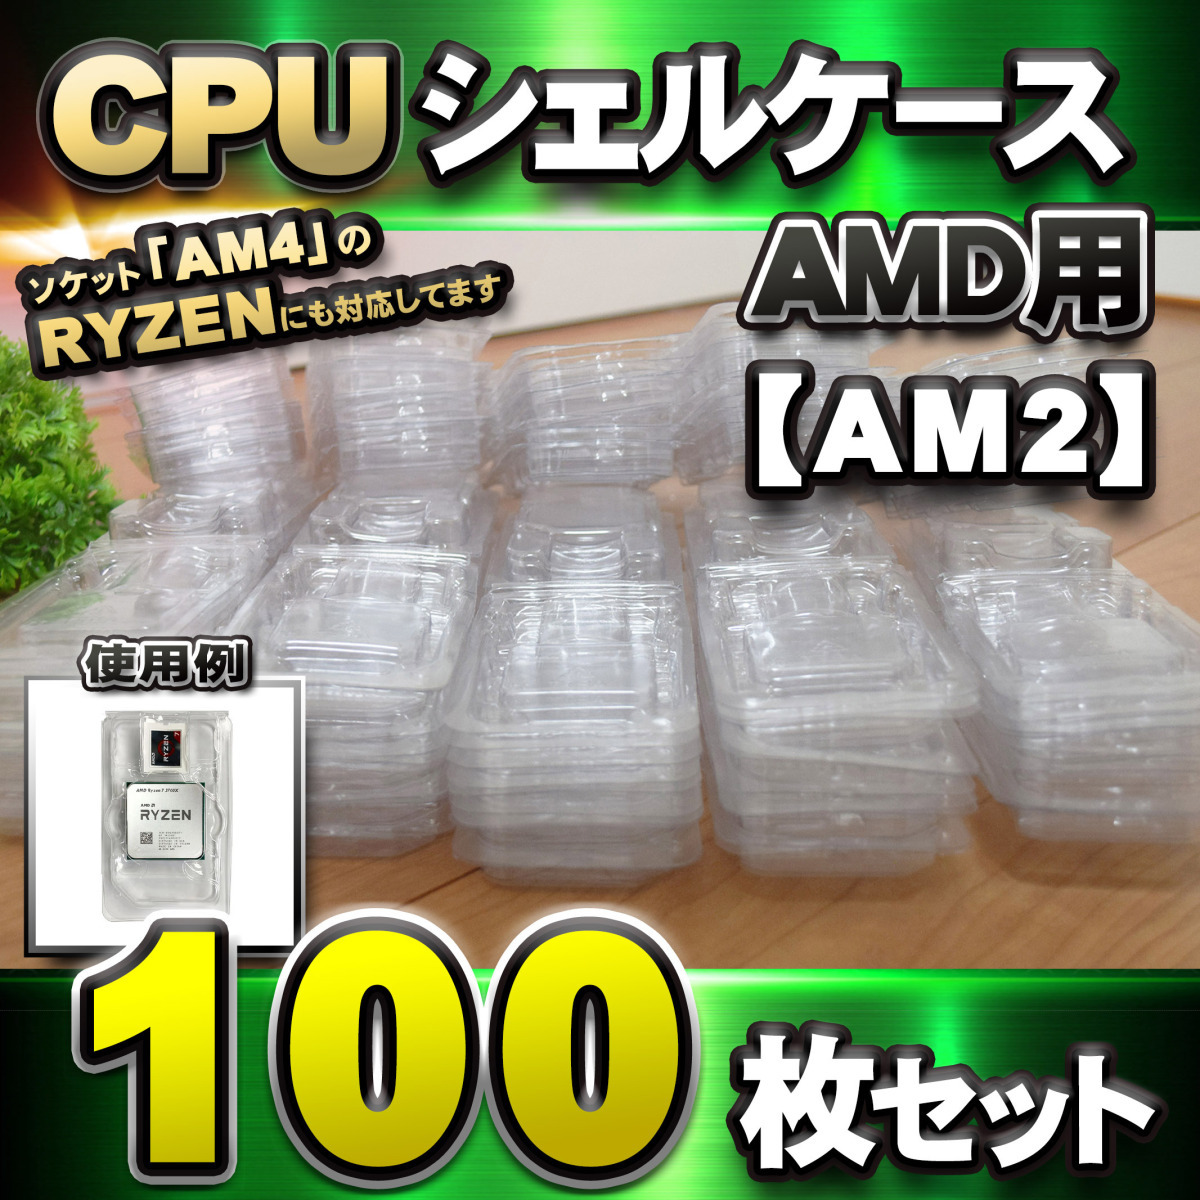 【 AM2 対応 】CPU シェルケース AMD用 プラスチック 【AM4のRYZENにも対応】 保管 収納ケース 100枚セット